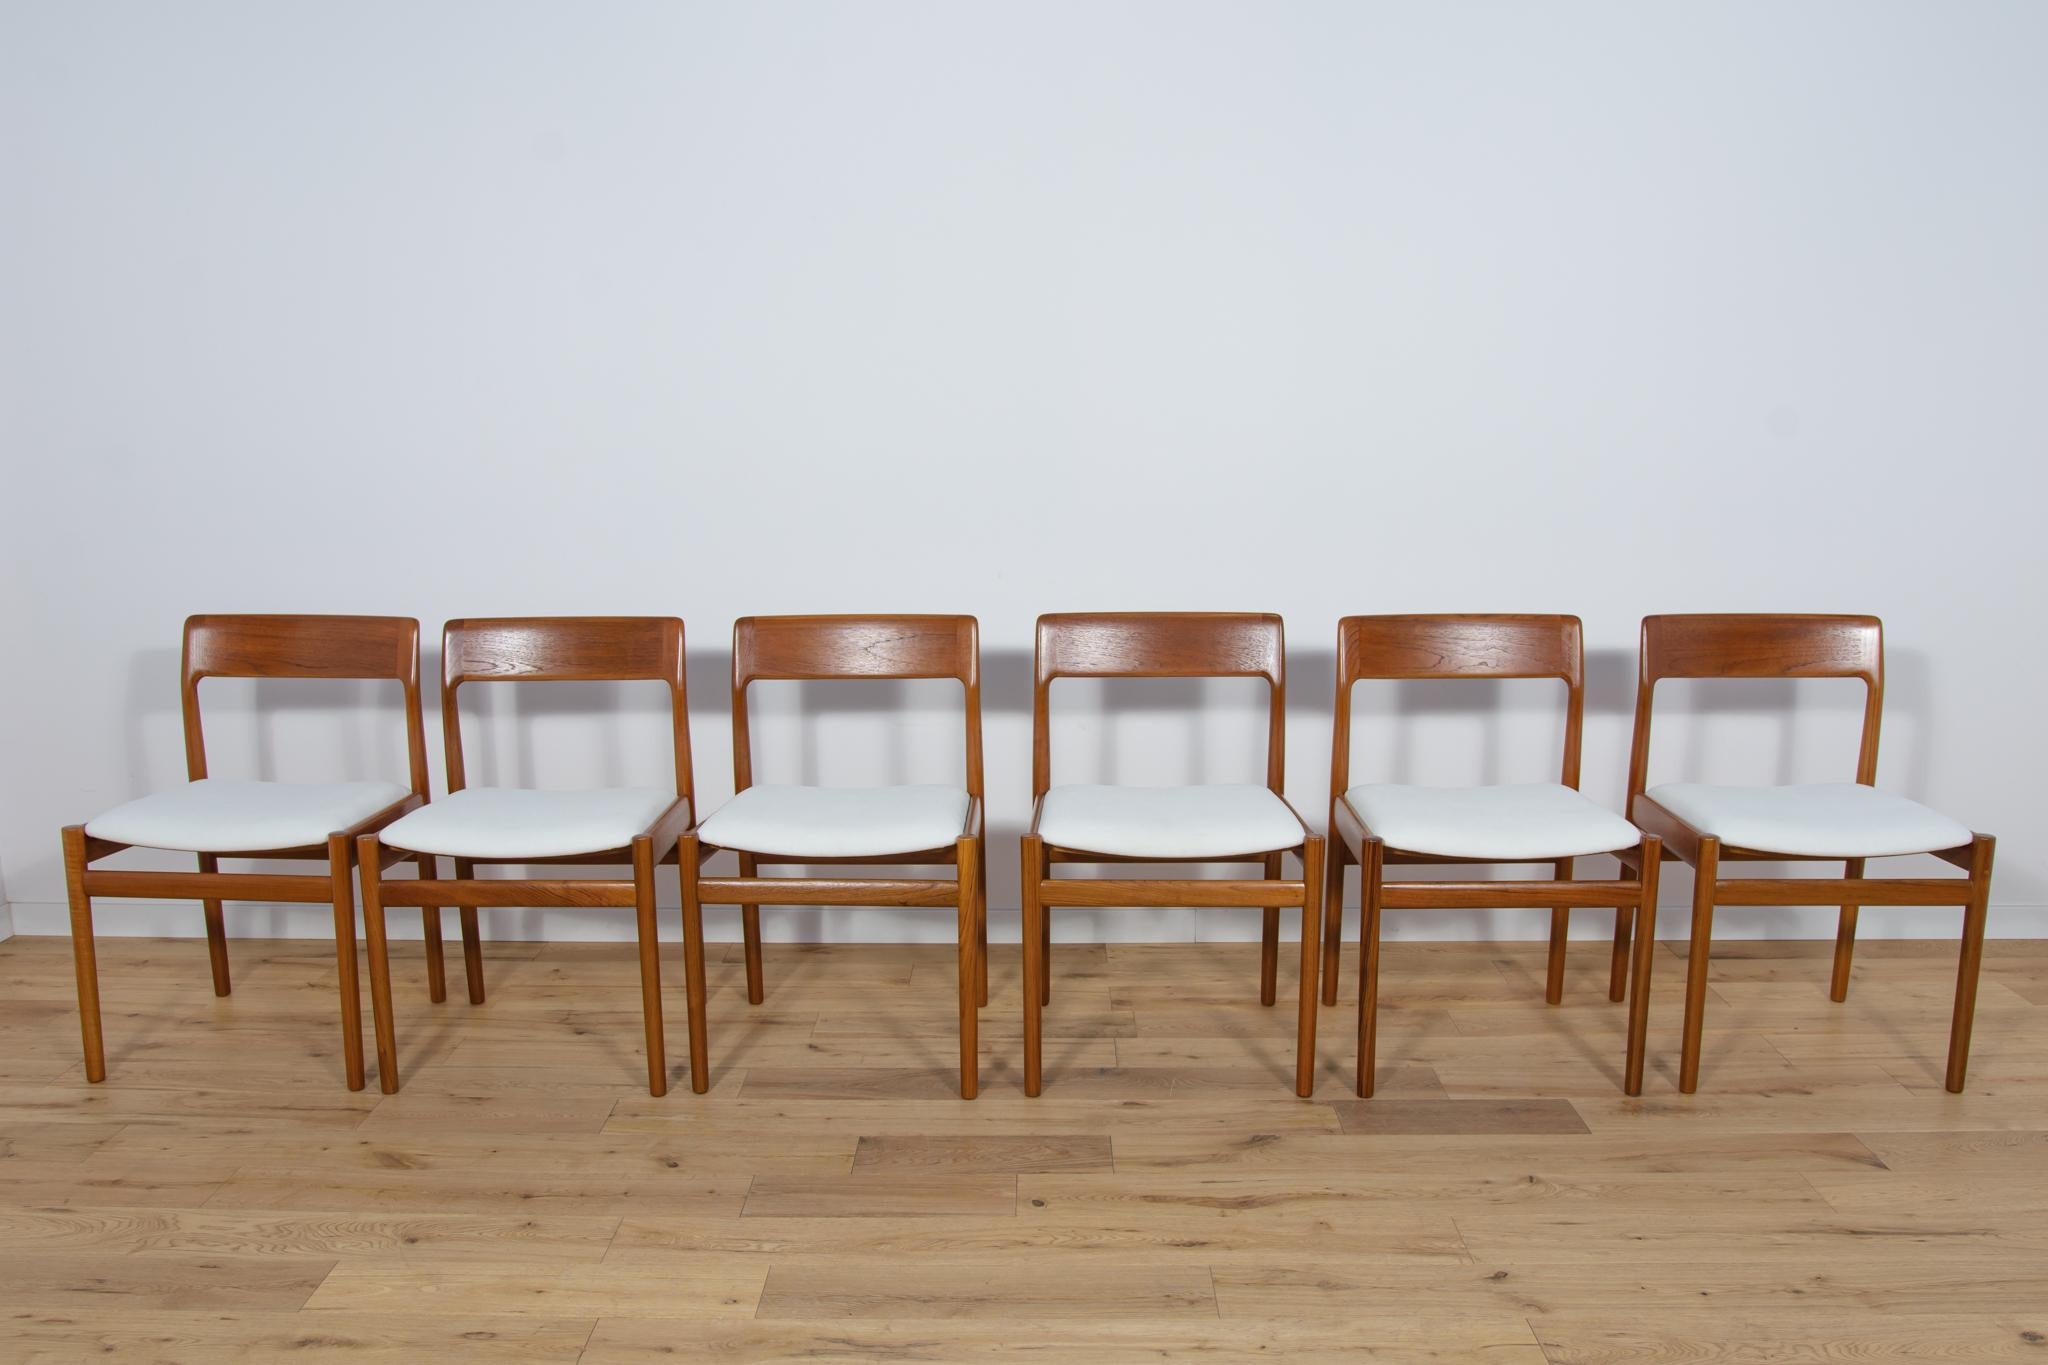 
Ein Satz von sechs Teakholz-Esszimmerstühlen von Johannes Nørgaard für Nørgaards Møbelfabrik aus den 1960er Jahren. Sehr elegante, moderne Teakholzstühle aus der Mitte des Jahrhunderts mit einer konturierten Form. Hochwertige MATERIALS und